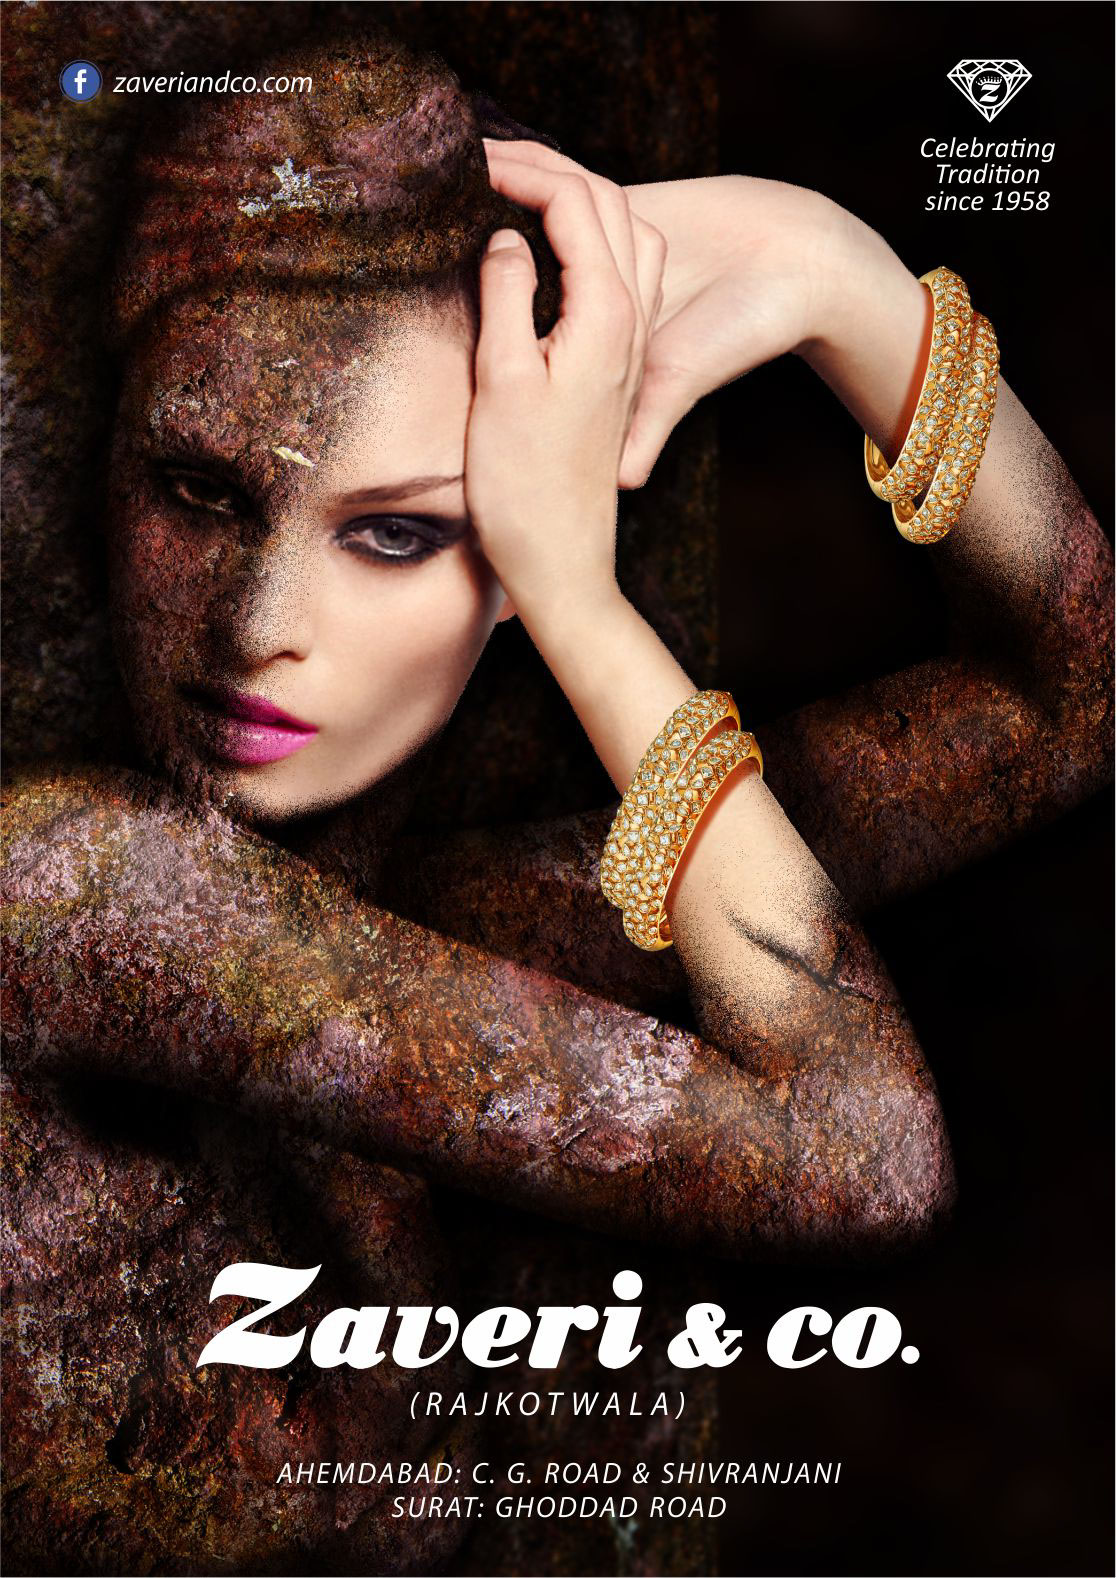 Jewellery ad campaign concept